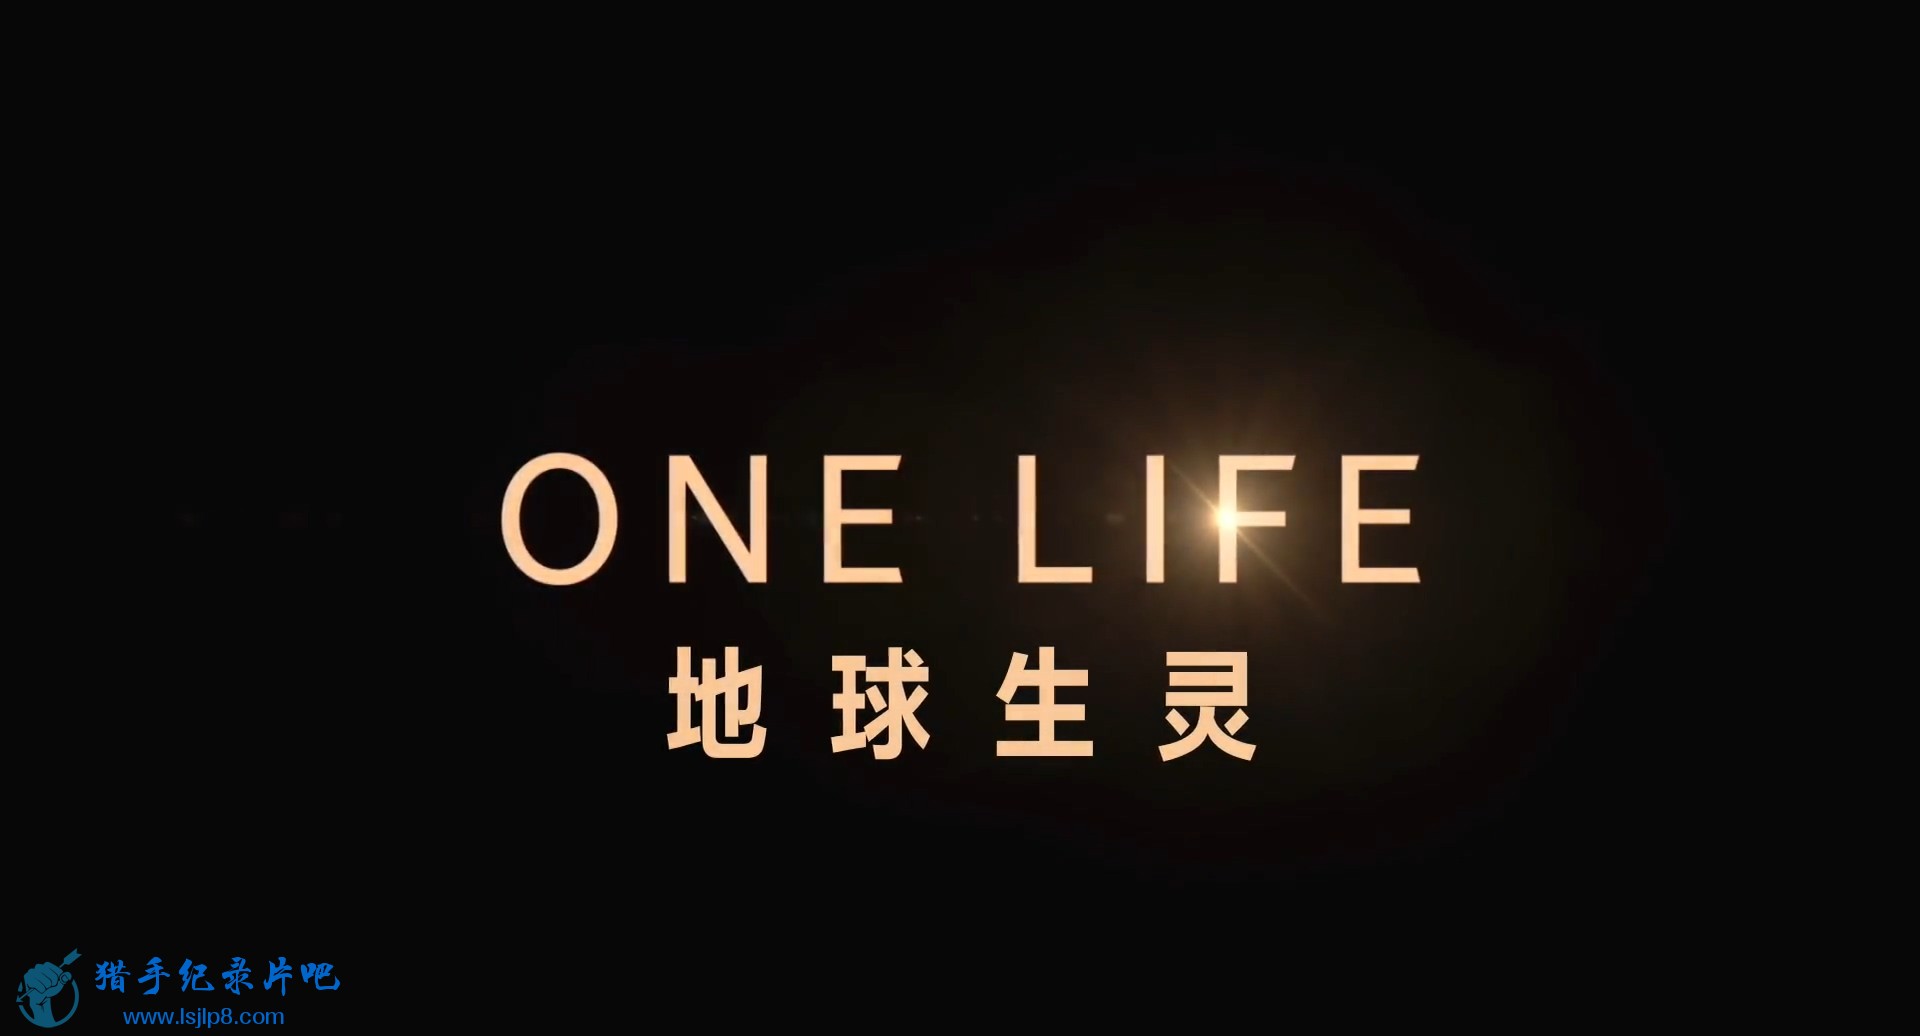 .One.Life.2011.Blu-ray.1080p.jlpzj.chs&amp;eng.mp4_20200309_112455.094.jpg